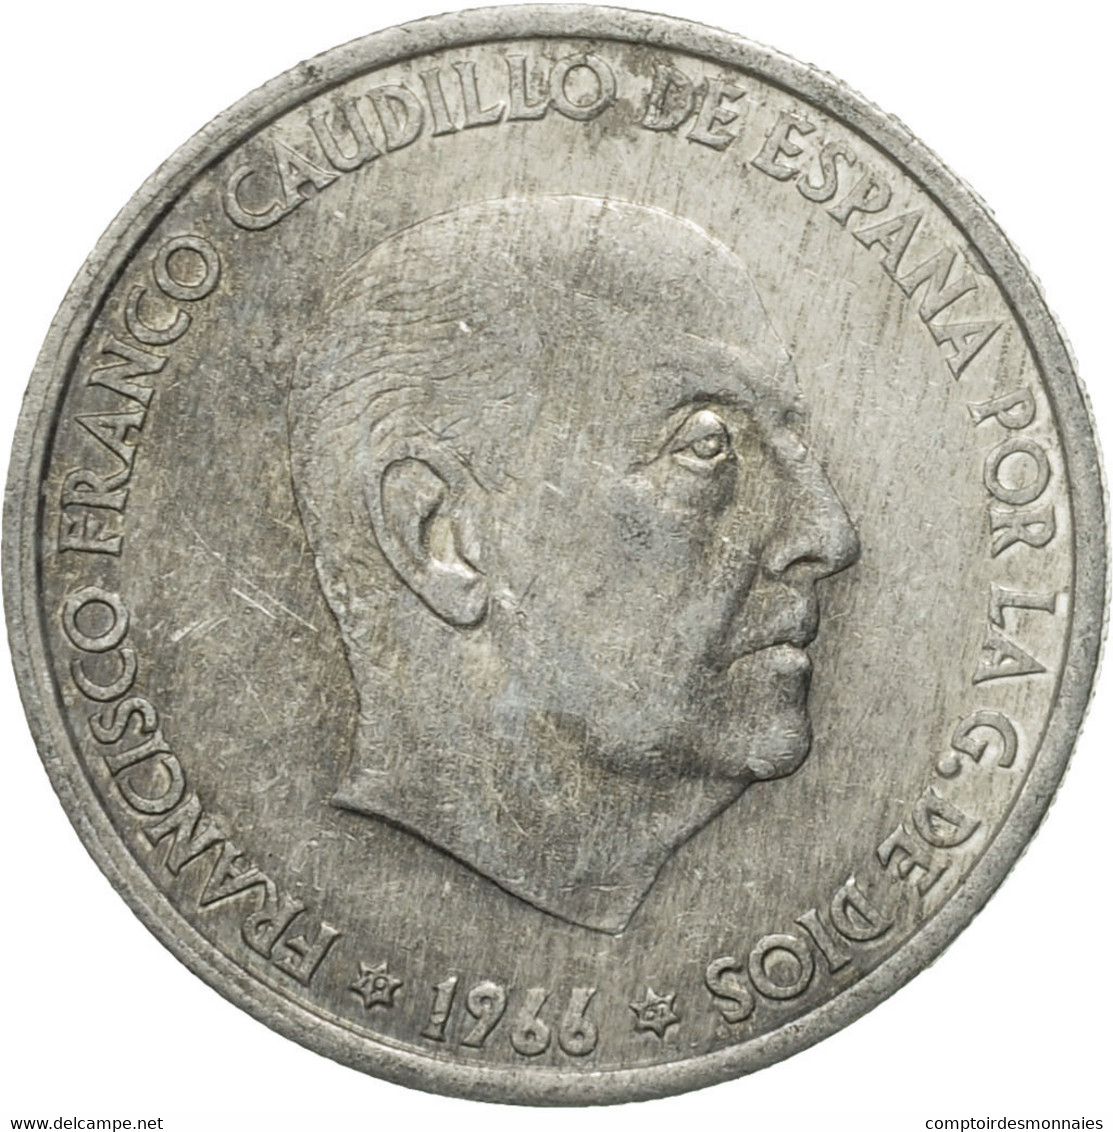 Monnaie, Espagne, Francisco Franco, Caudillo, 50 Centimos, 1967, TB, Aluminium - 50 Centiem